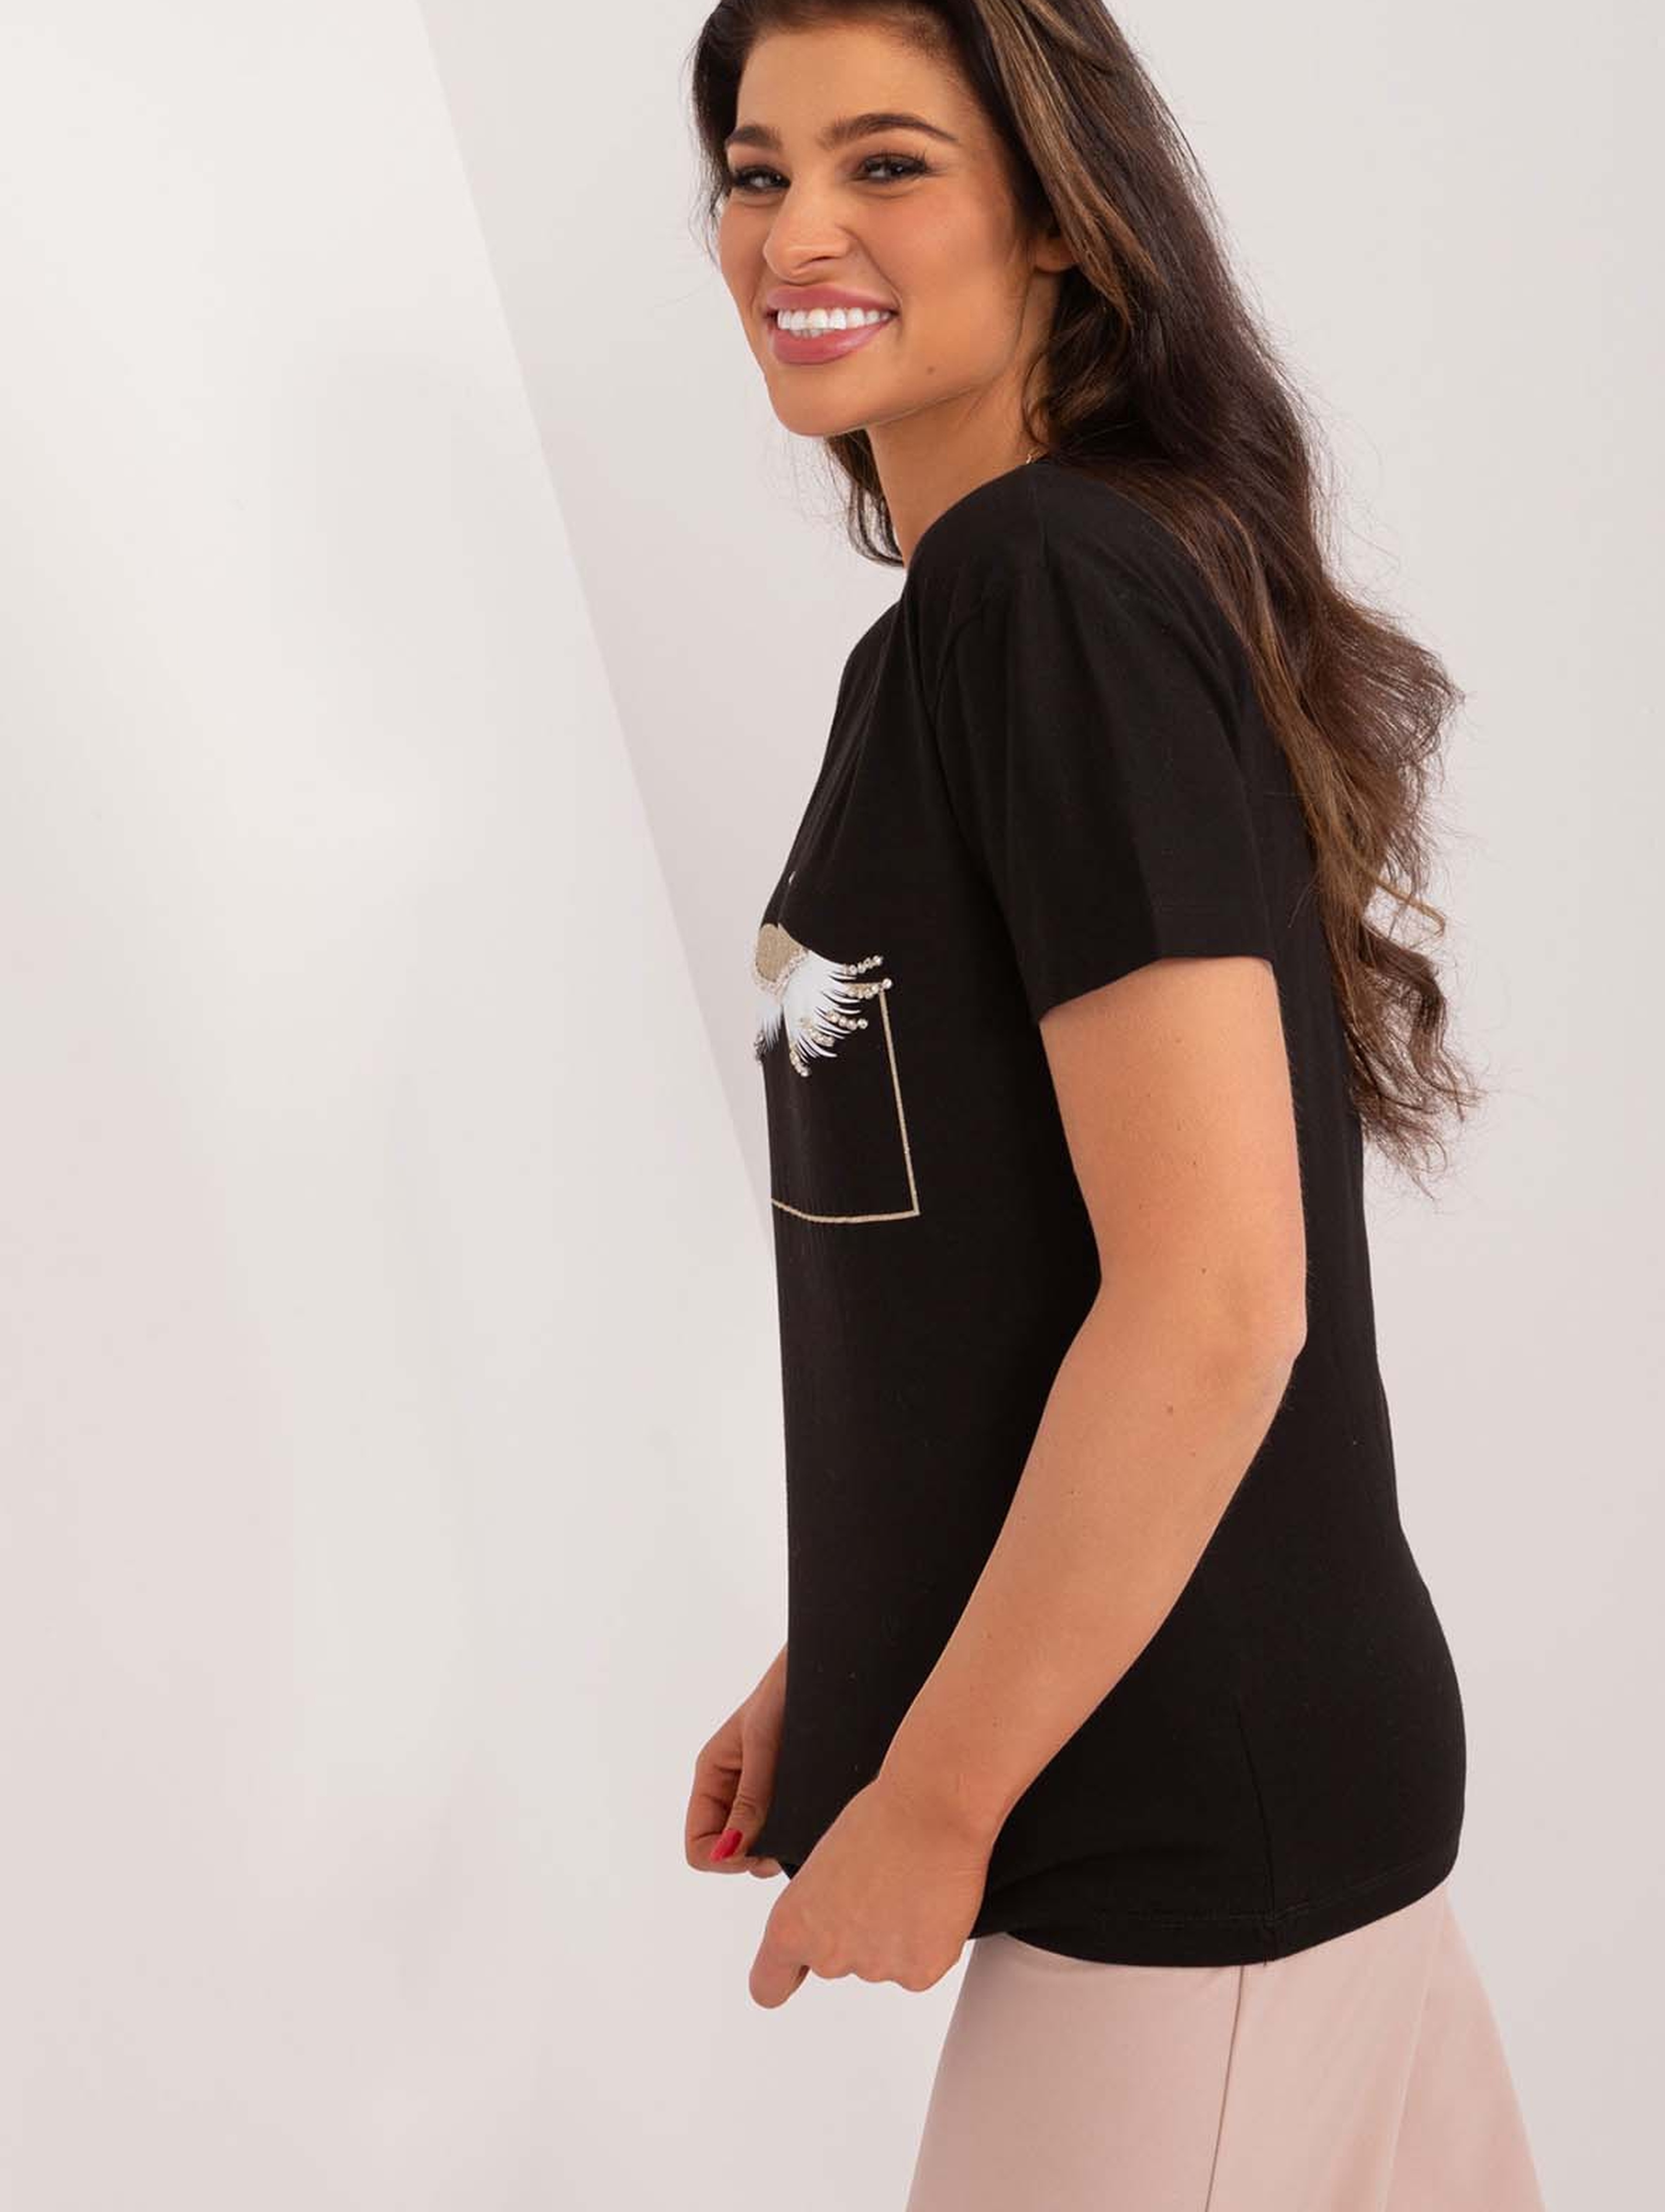 Bawełniany t-shirt damski z błyszczącym nadrukiem- czarny